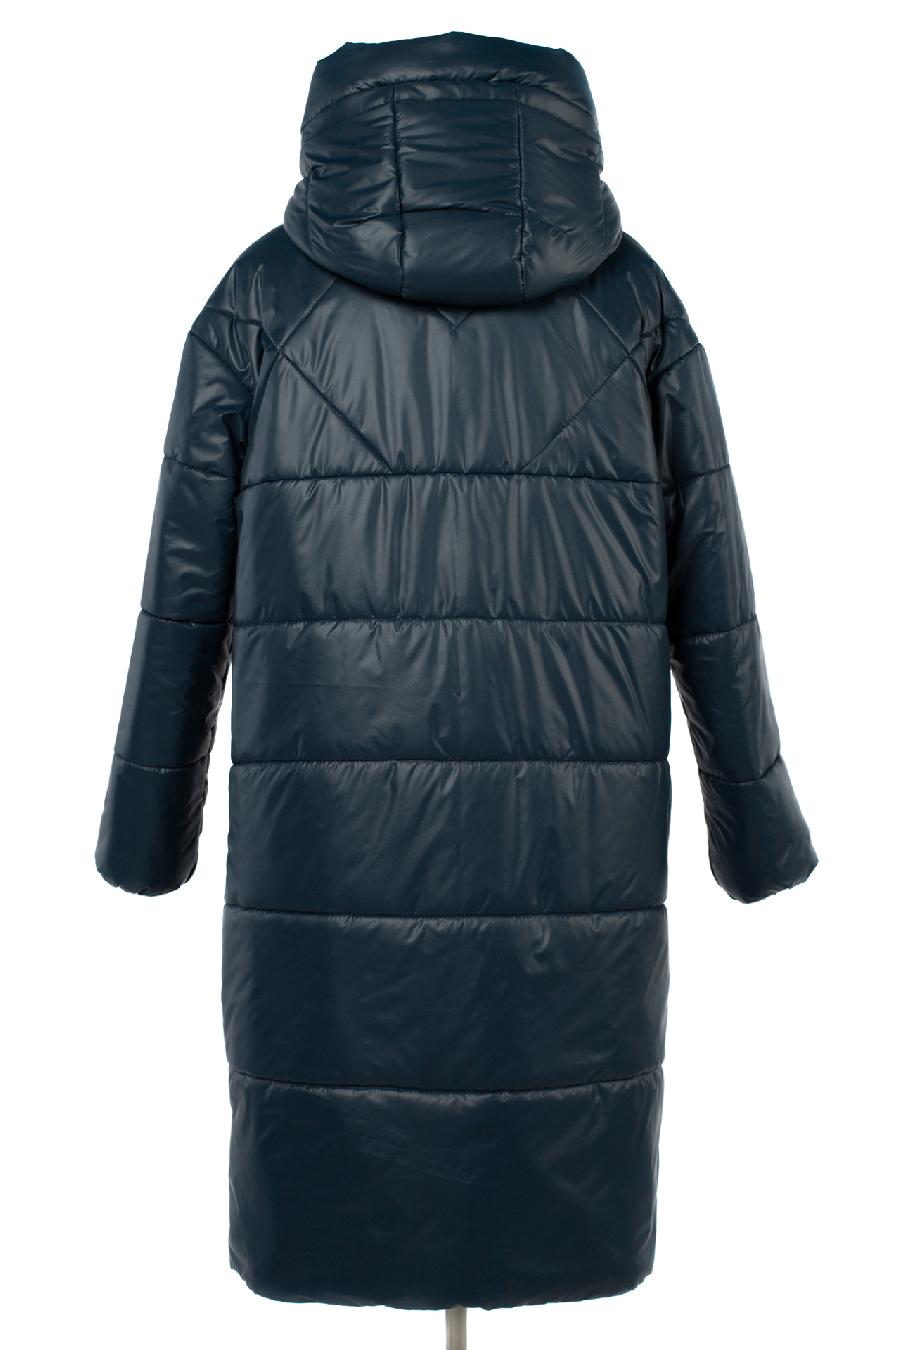 05-2117 Куртка женская зимняя (термофин 250) Плащевка синий